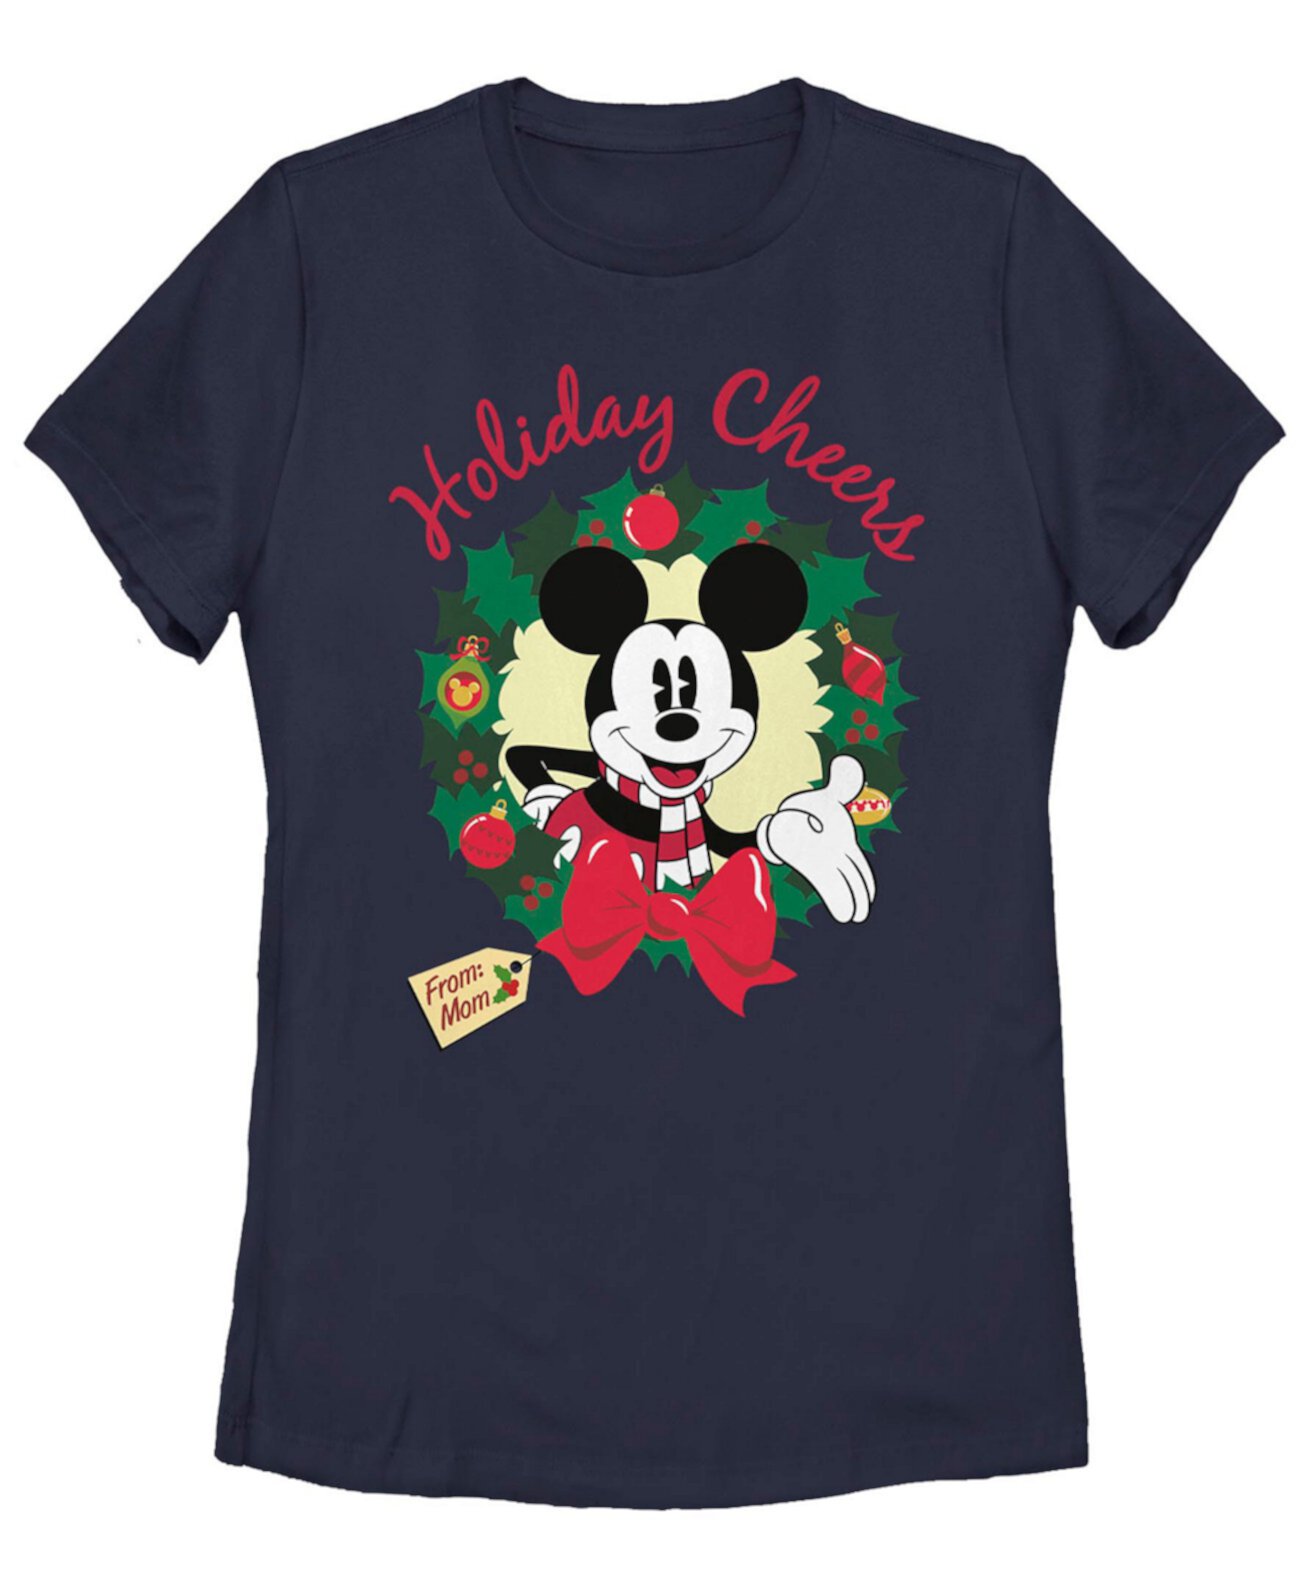 Женская классическая праздничная футболка с короткими рукавами Disney Mickey Cheer Mom FIFTH SUN